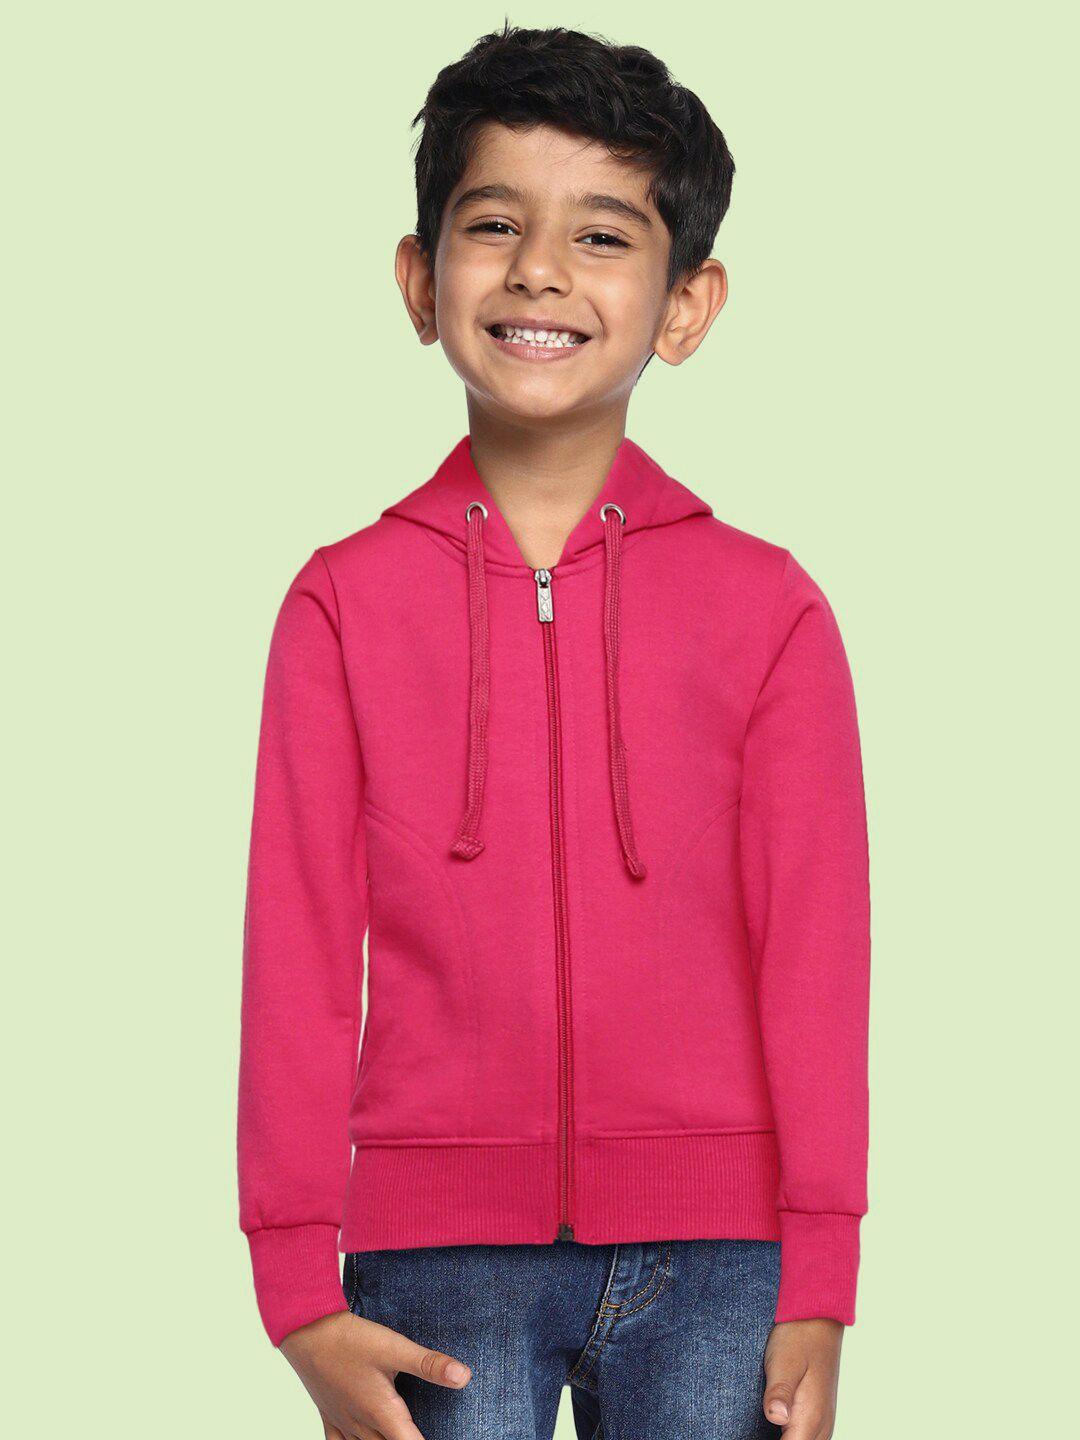 adbucks-boys-pink-hooded-sweatshirt